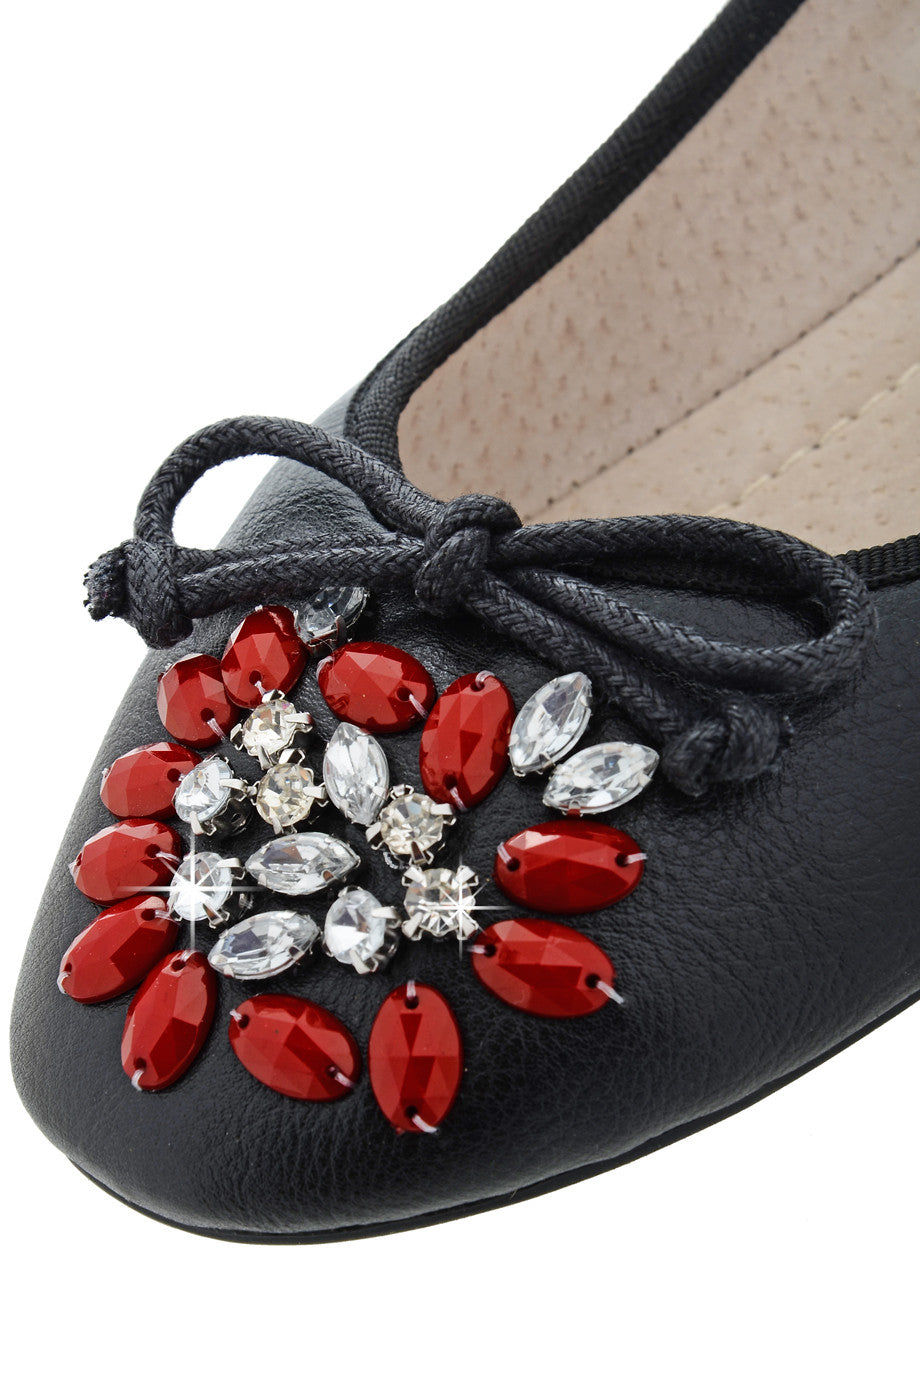 Mαύρες Μπαλαρίνες με Κρύσταλλα | Γυναικεία Παπούτσια